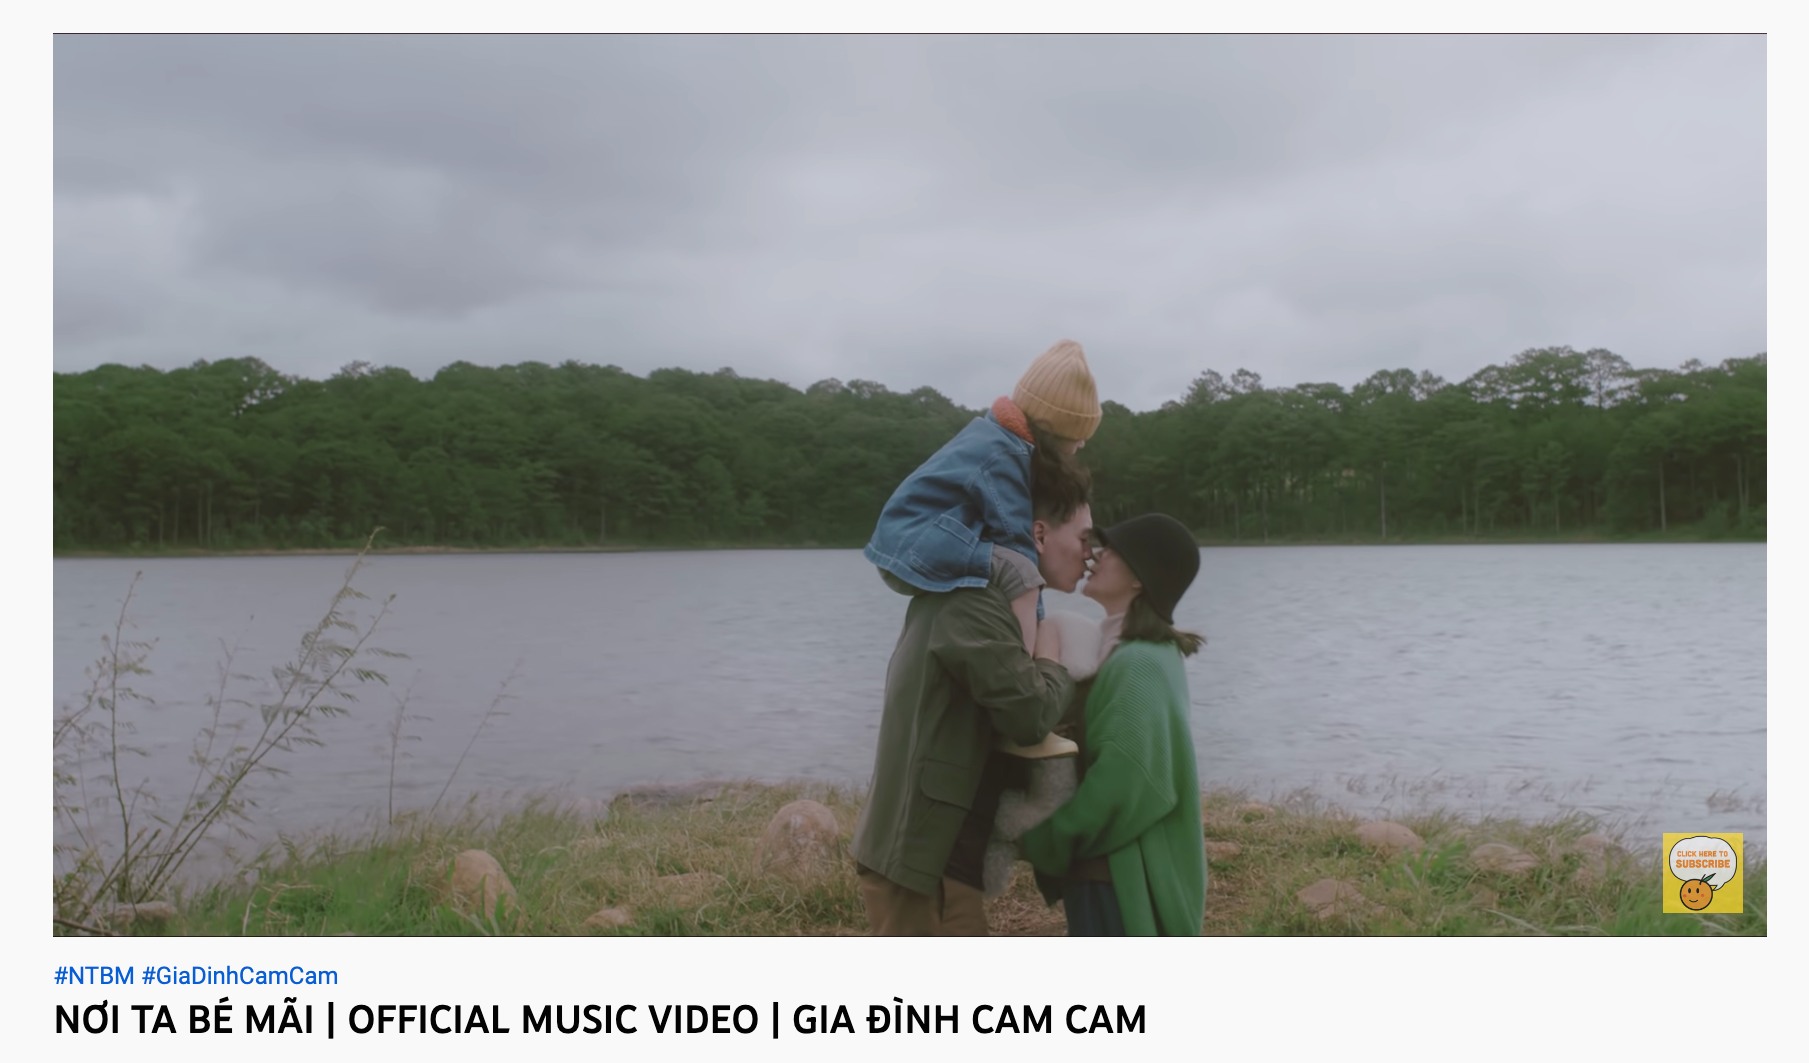 Gia đình Cam Cam 3 Hành trình từ hot face đến hot family tại Việt Nam đầu tiên đạt Nút vàng YouTube 